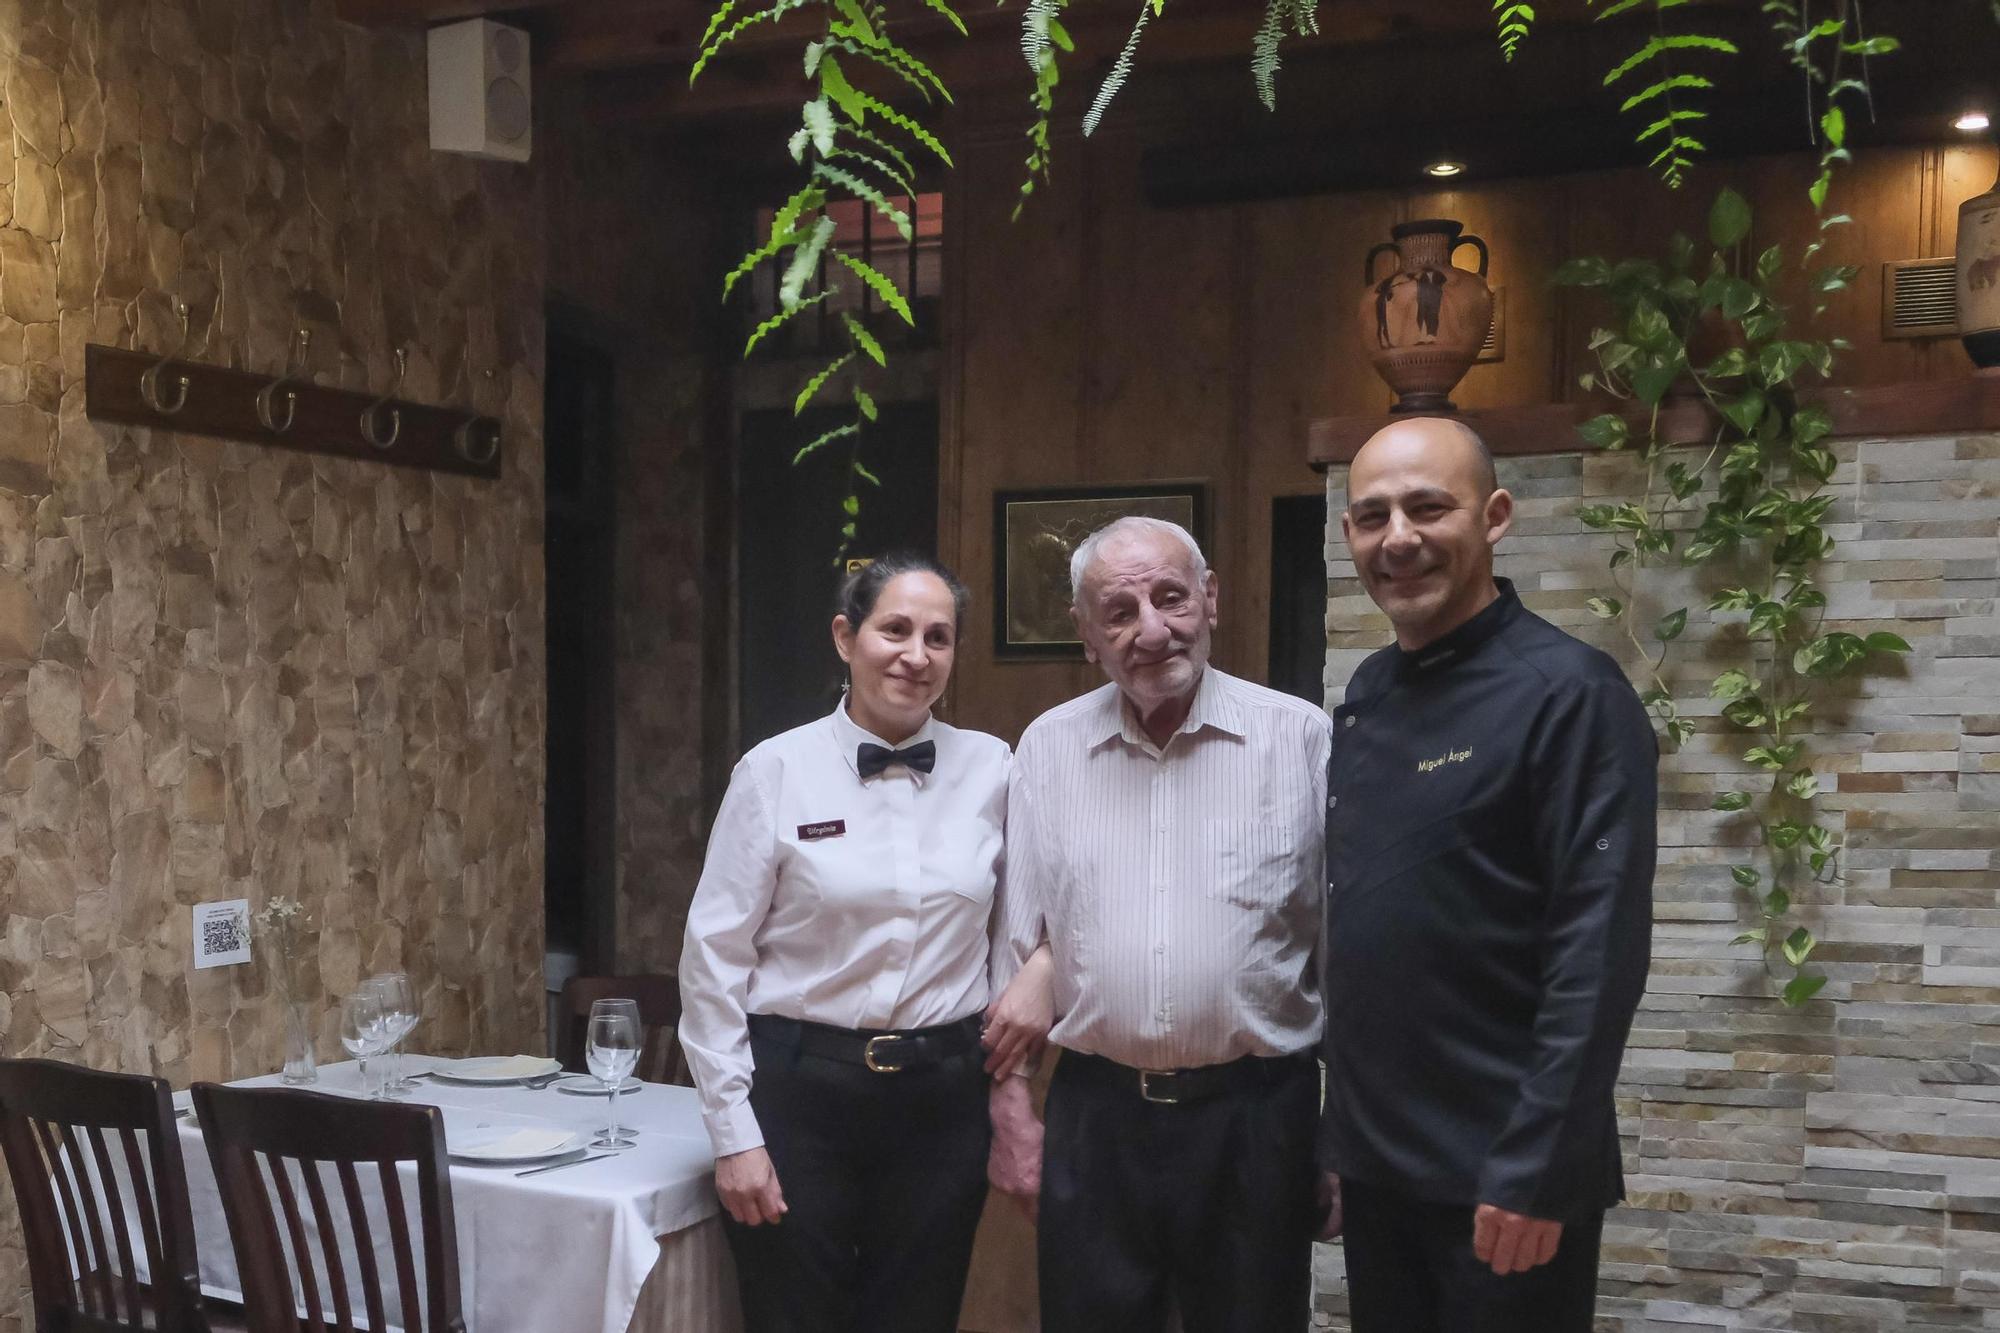 Serie Jilorio: Restaurante El Vinco, La Atalaya.